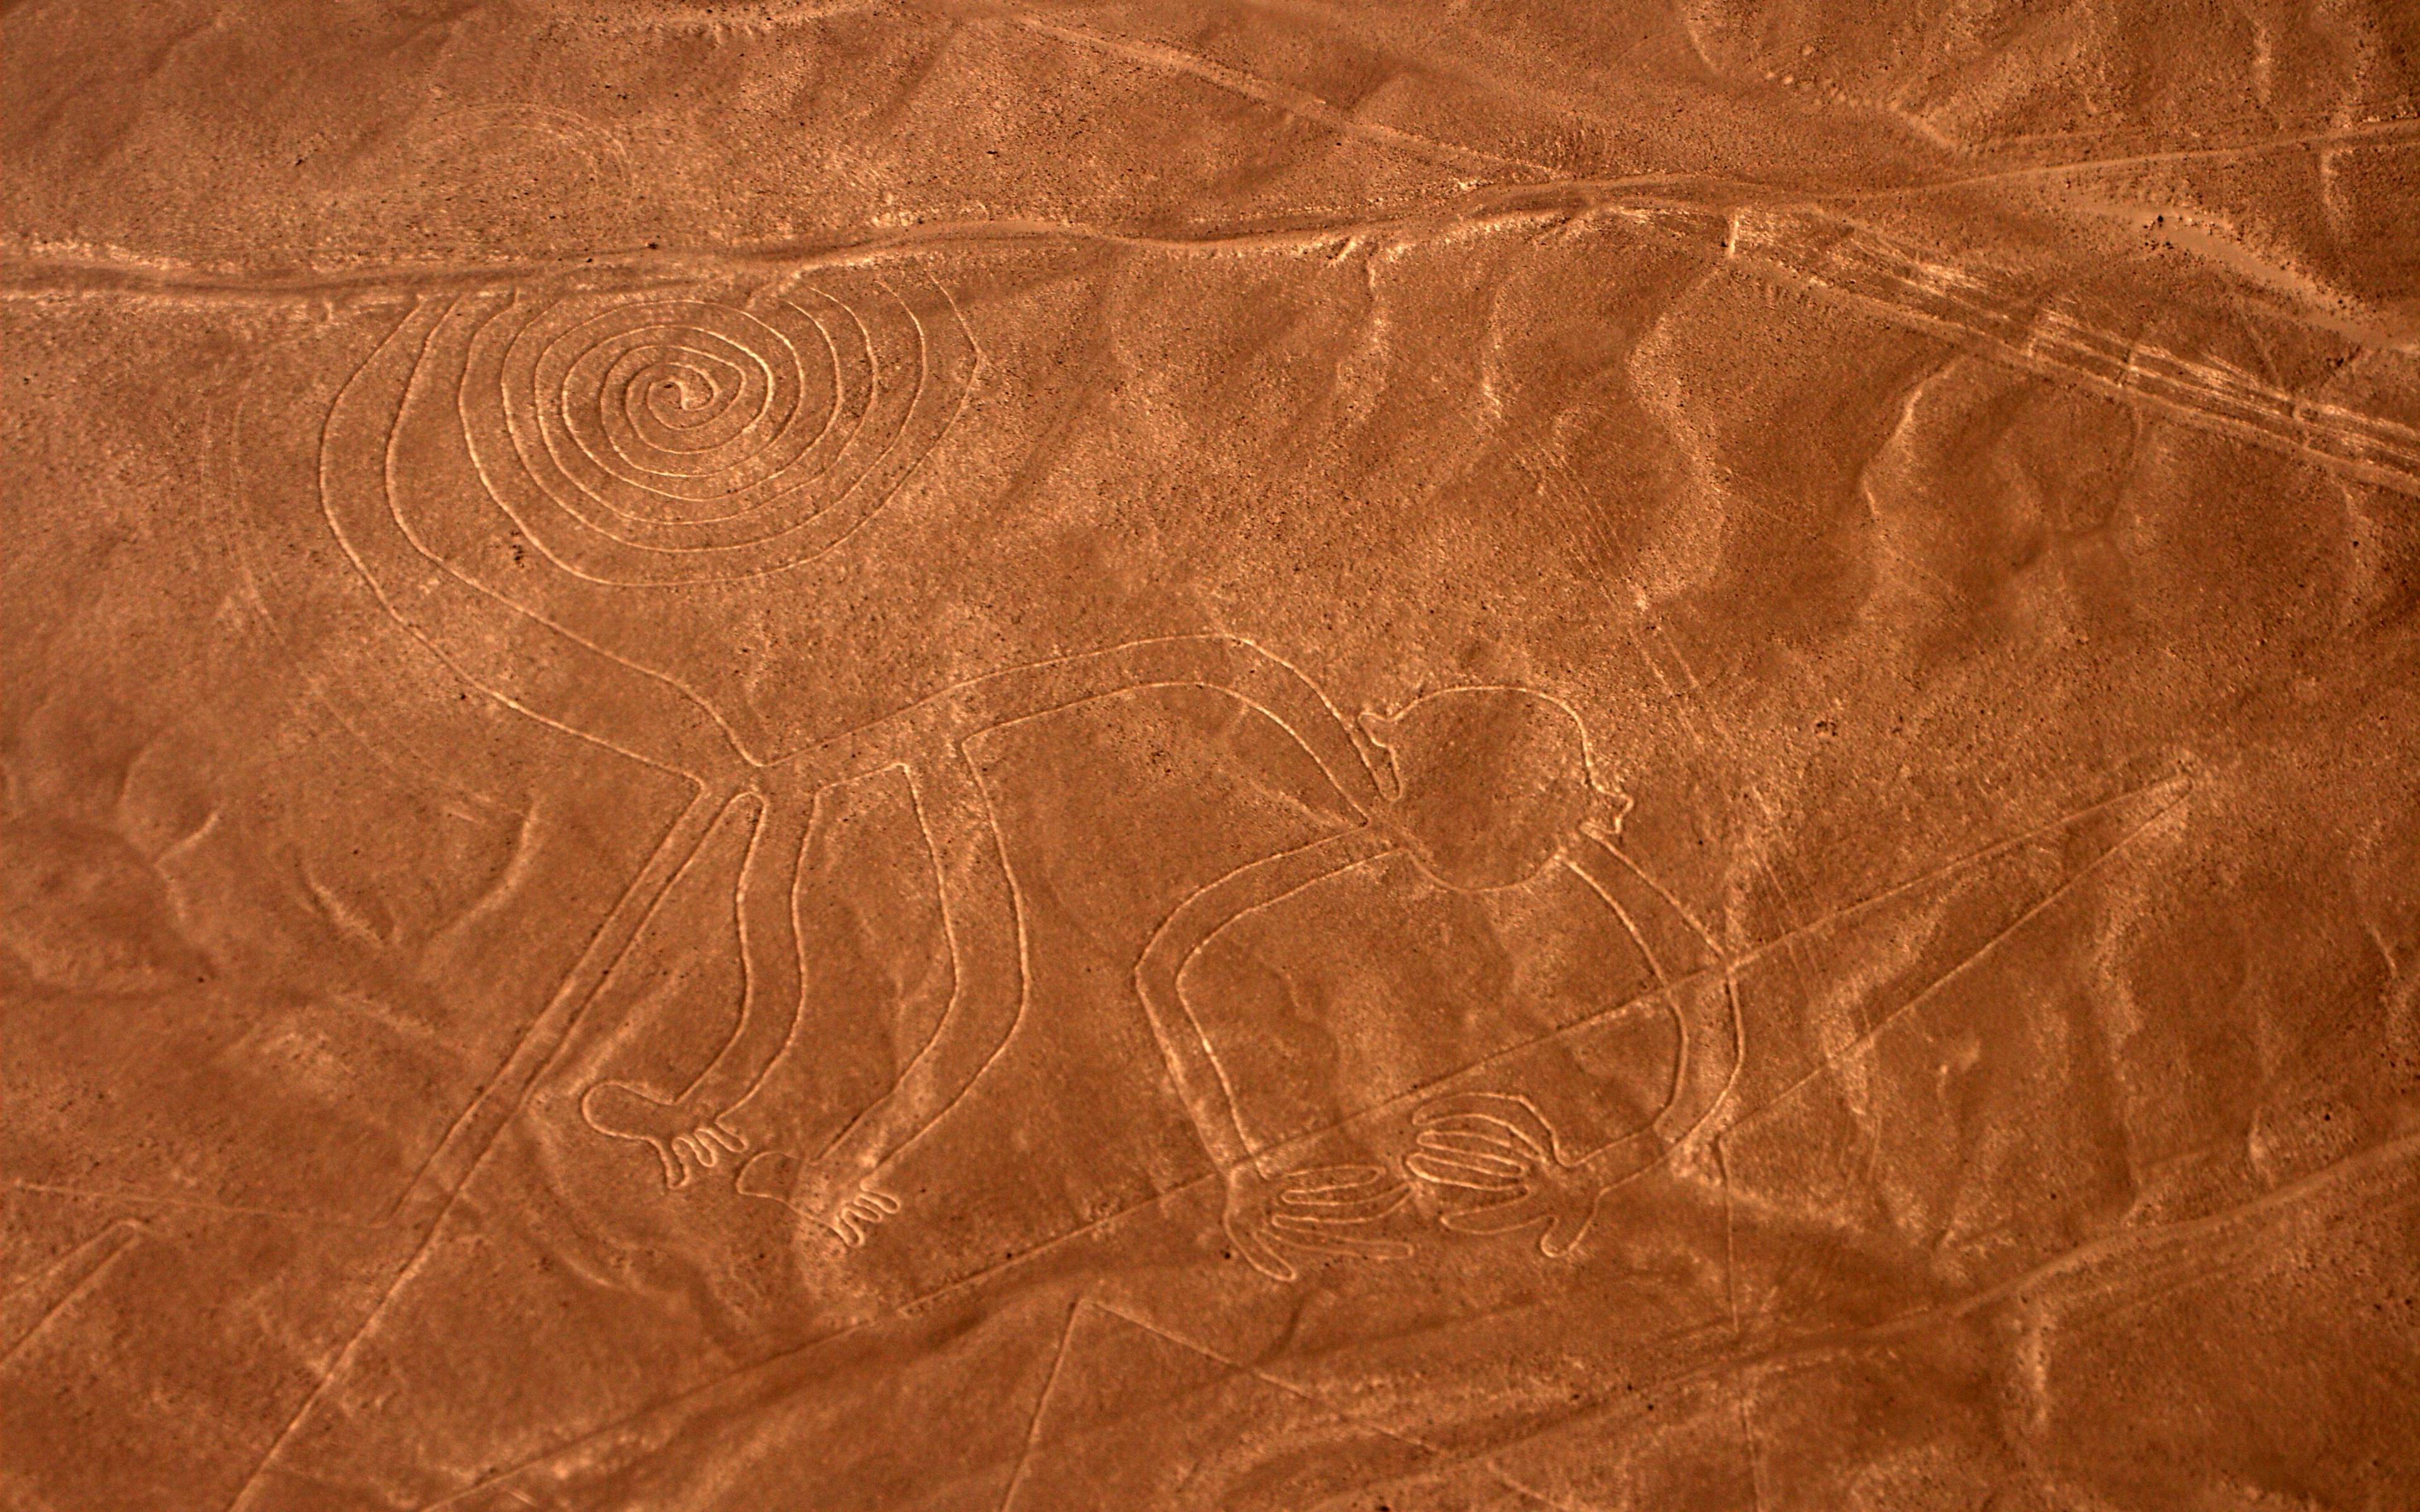 Nazca ed i misteri del deserto